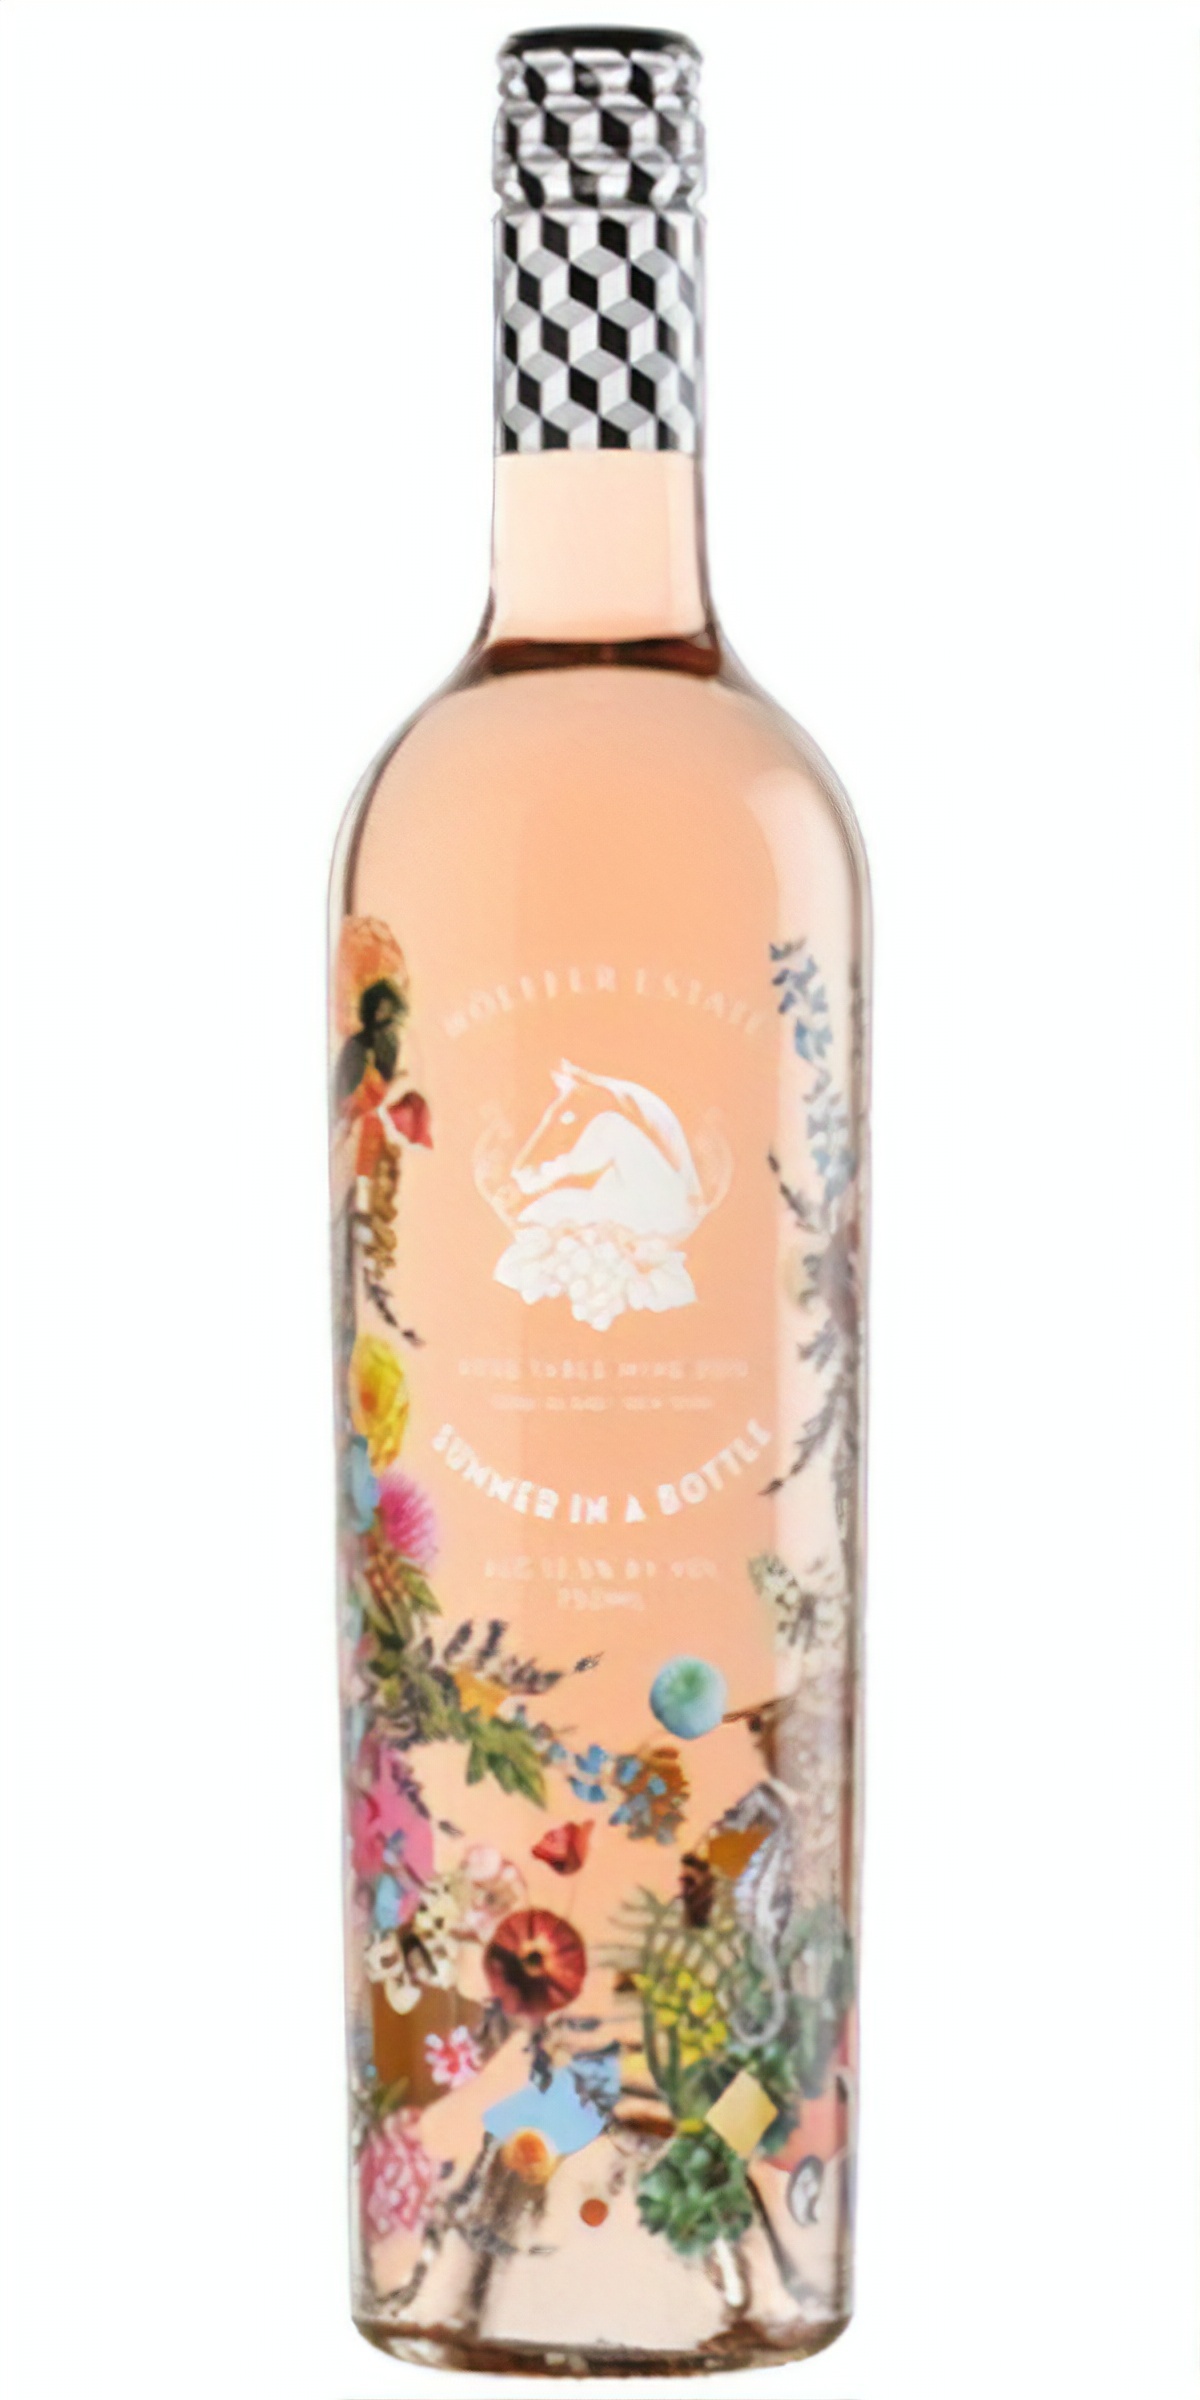 Wölffer Estate Vineyard, Summer in a Bottle and Estate Rosé, 2019